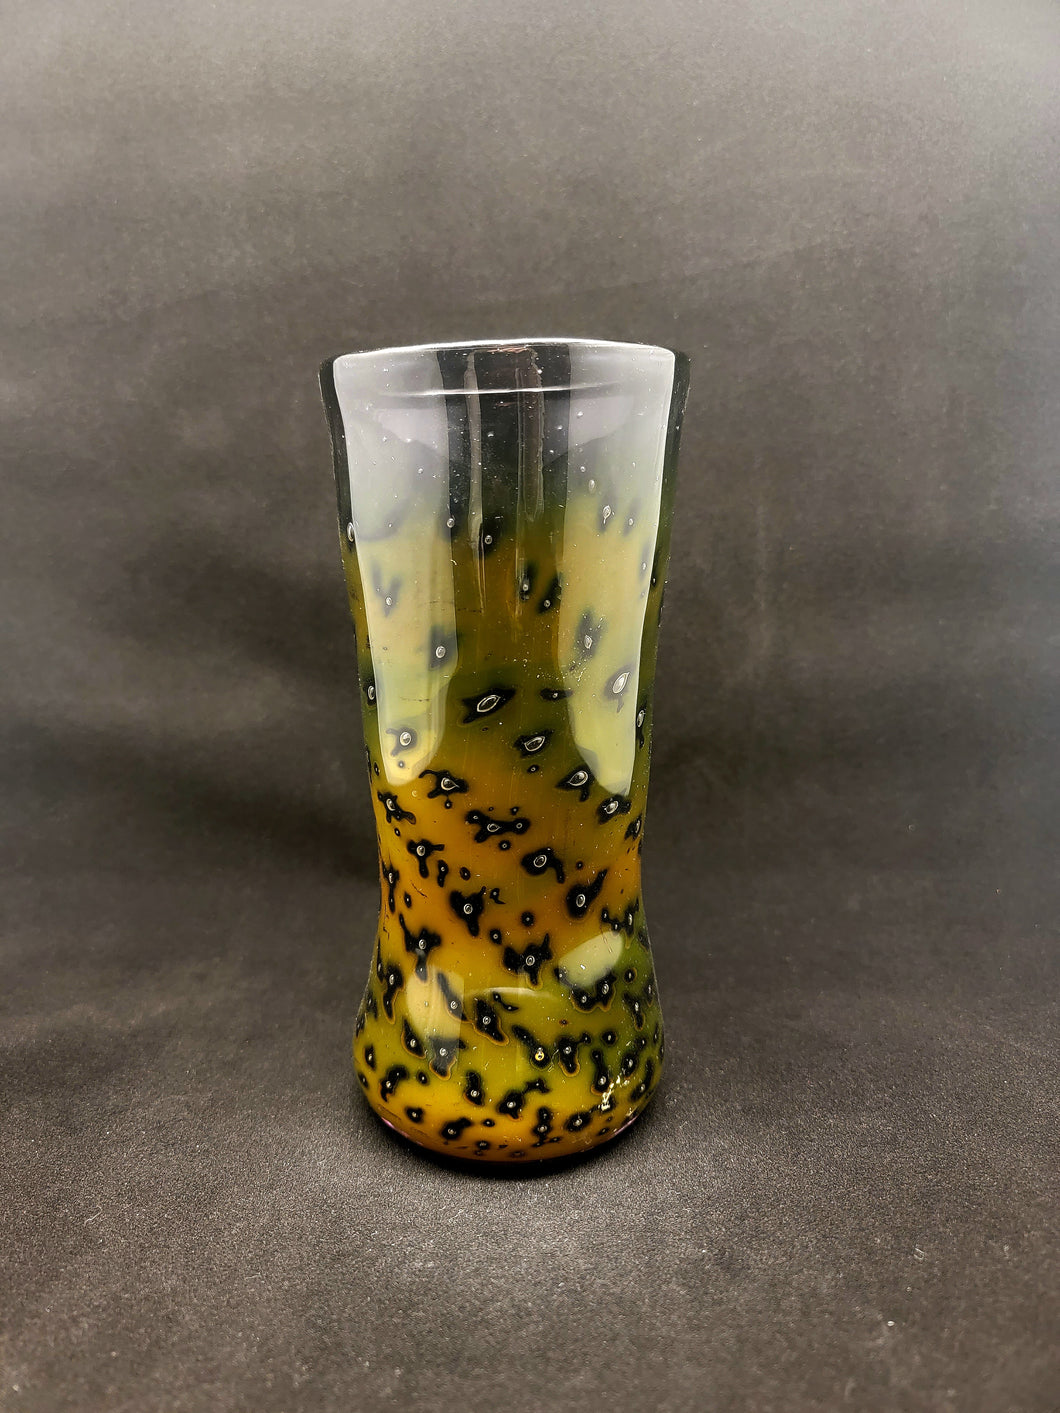 Parison Glass Cups 1-12